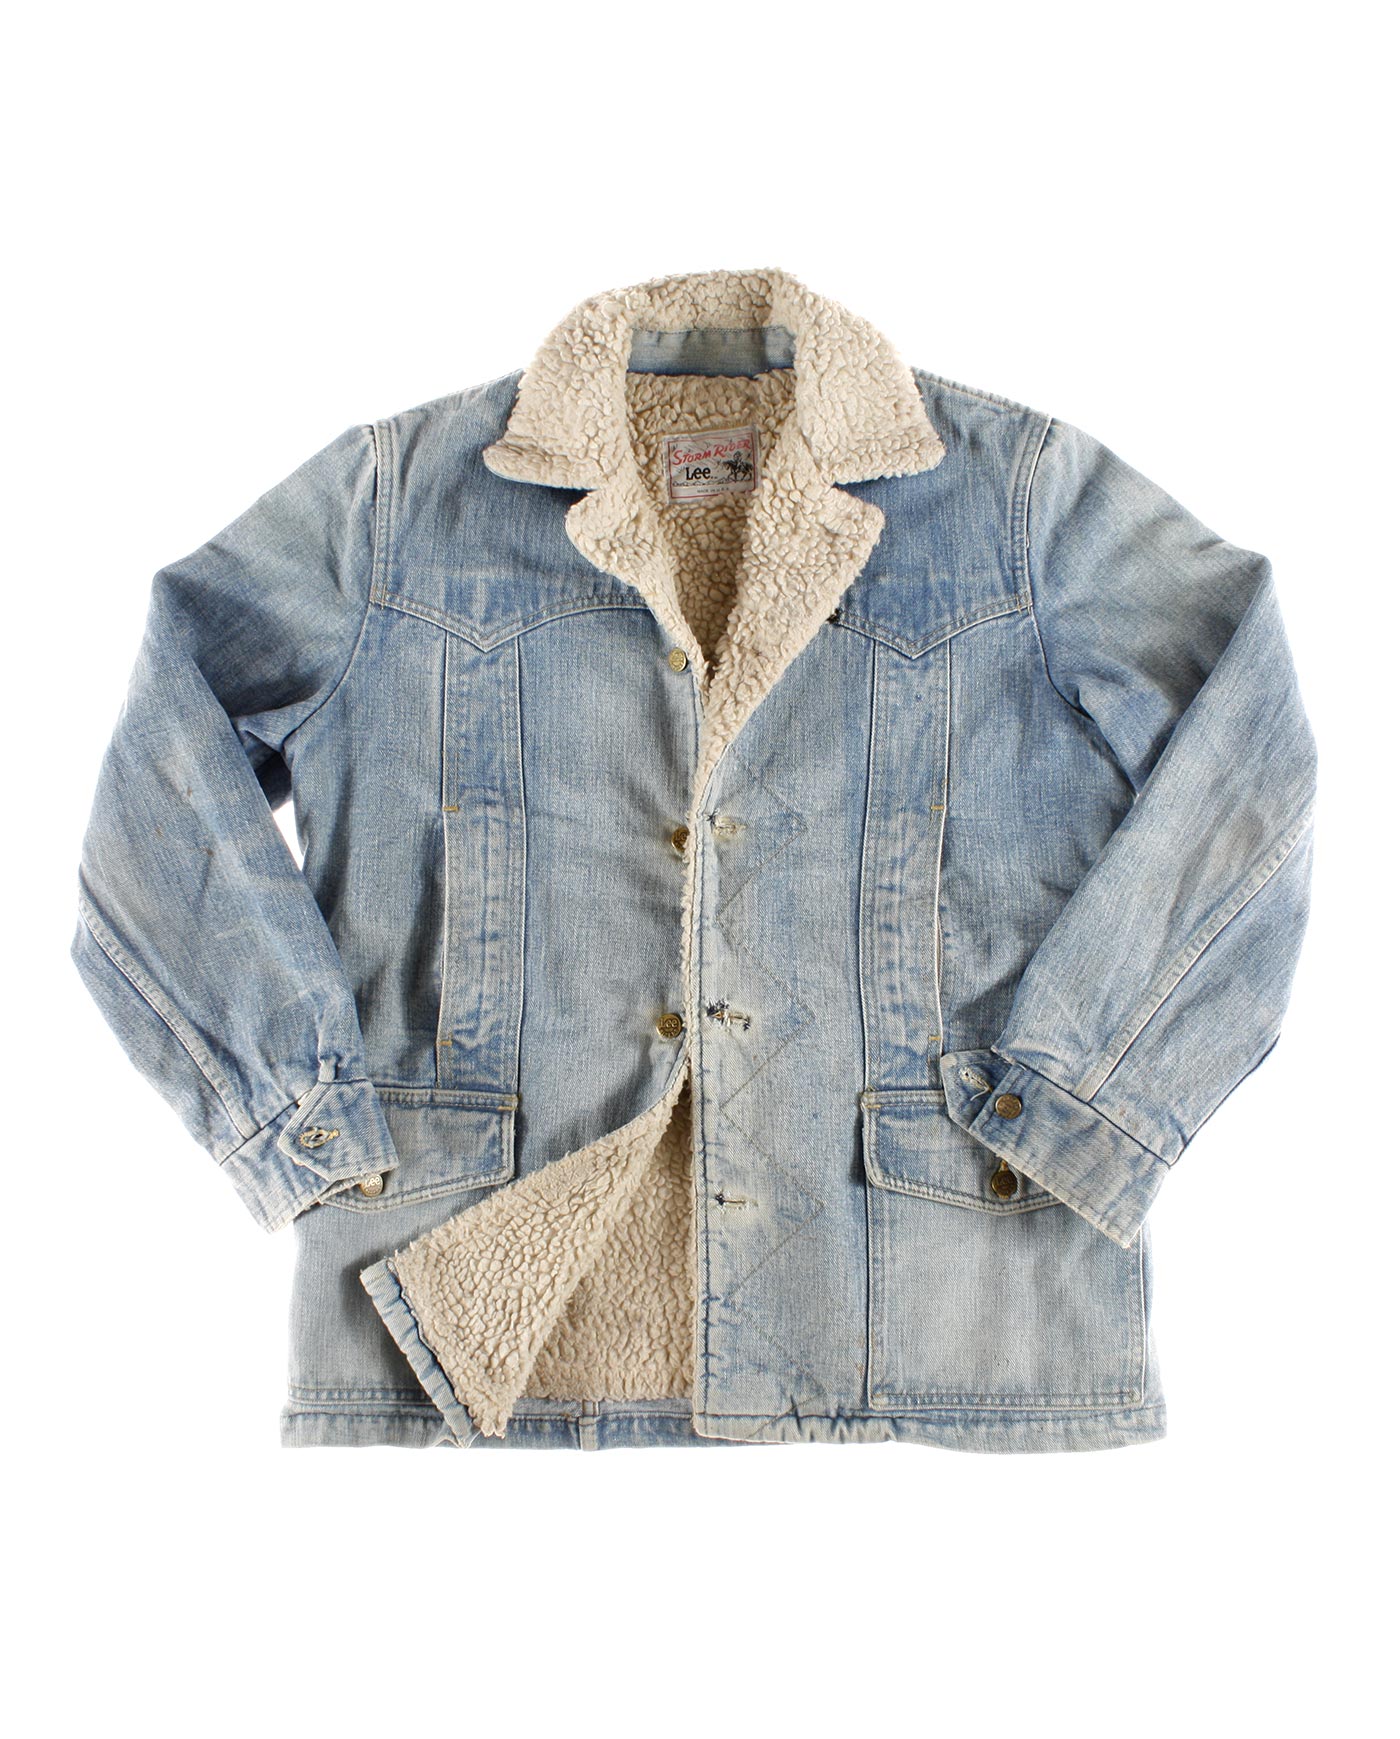 LEE STORM RIDER denim jacket 60s – Madeinused